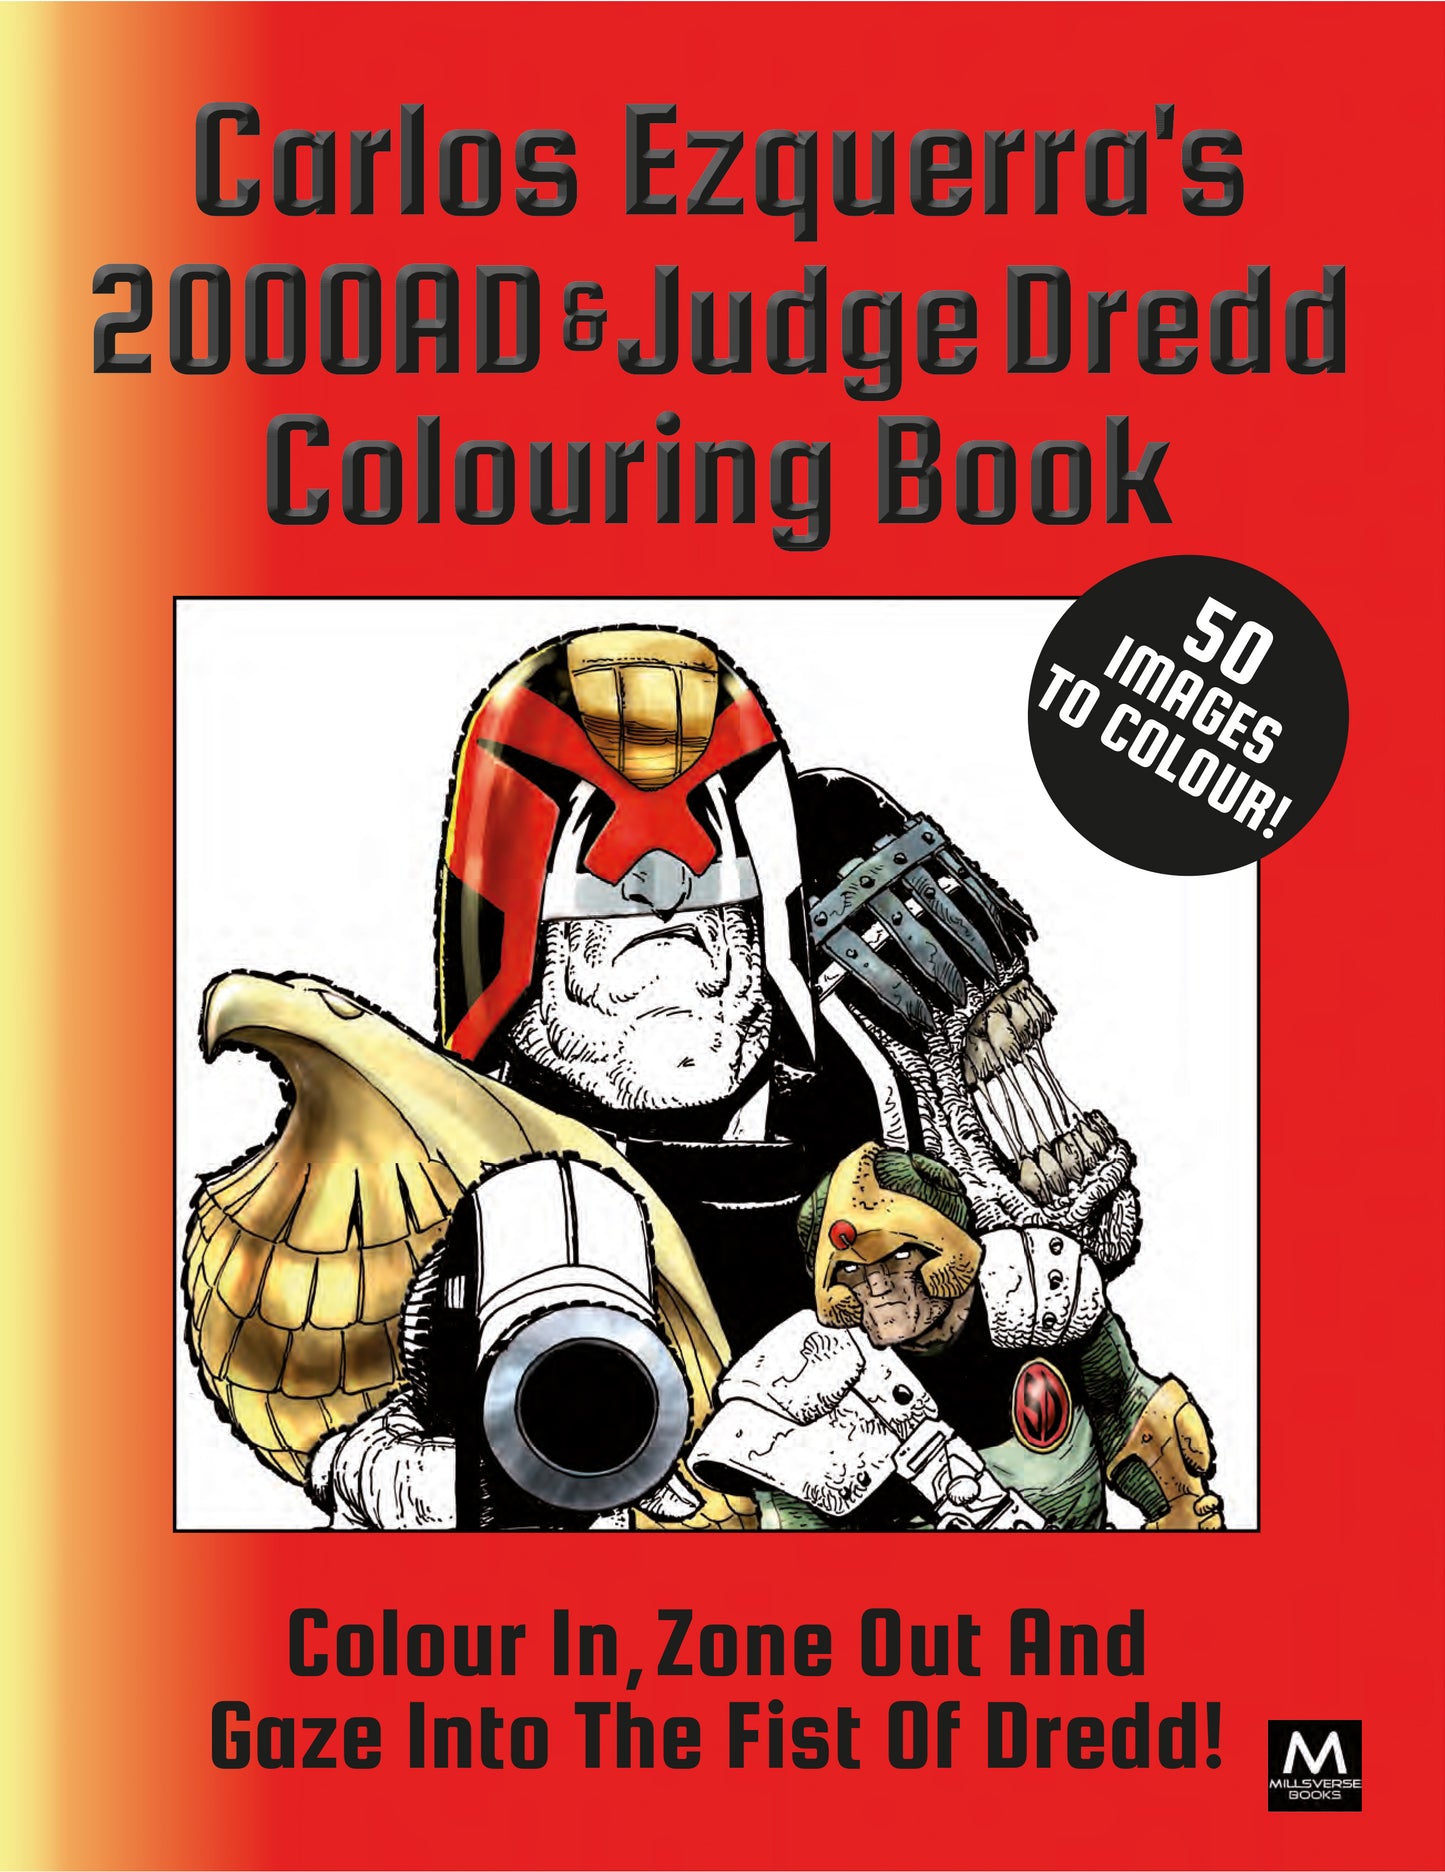 Carlos Ezquerra's 2000AD & Judge Dredd Colouring Book